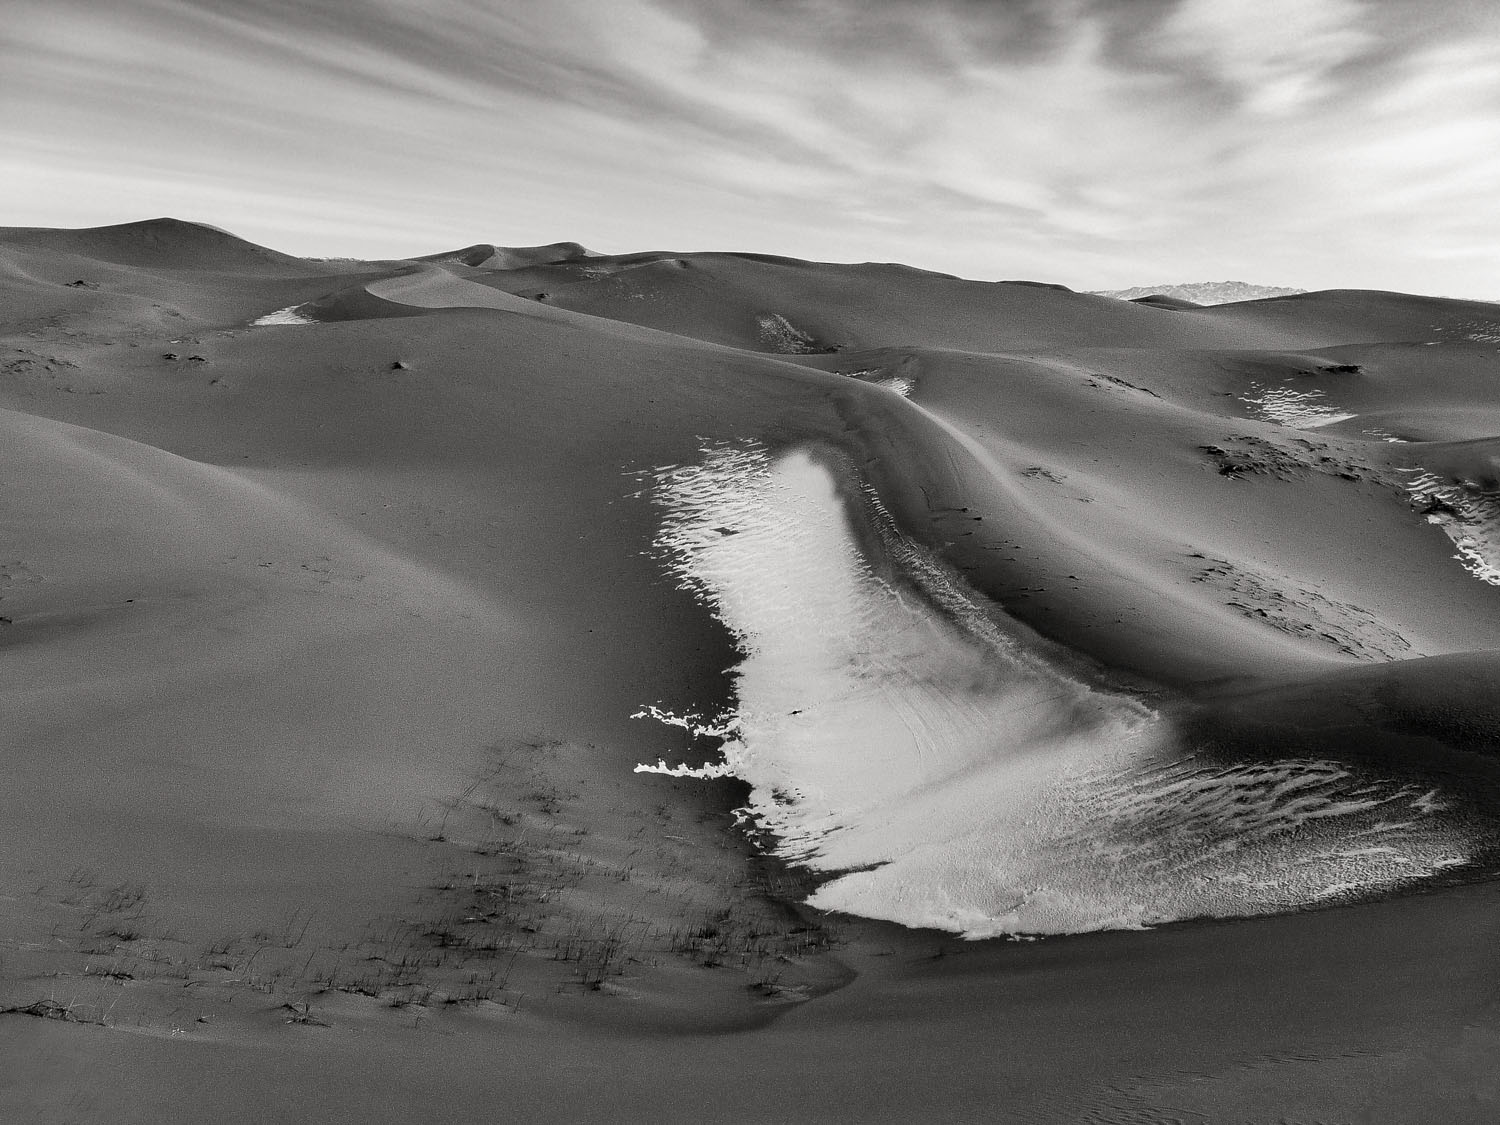 Snow-in-the-sand-dunes-of-the-Gobi-Desert-Mongolia - WEMOOCH